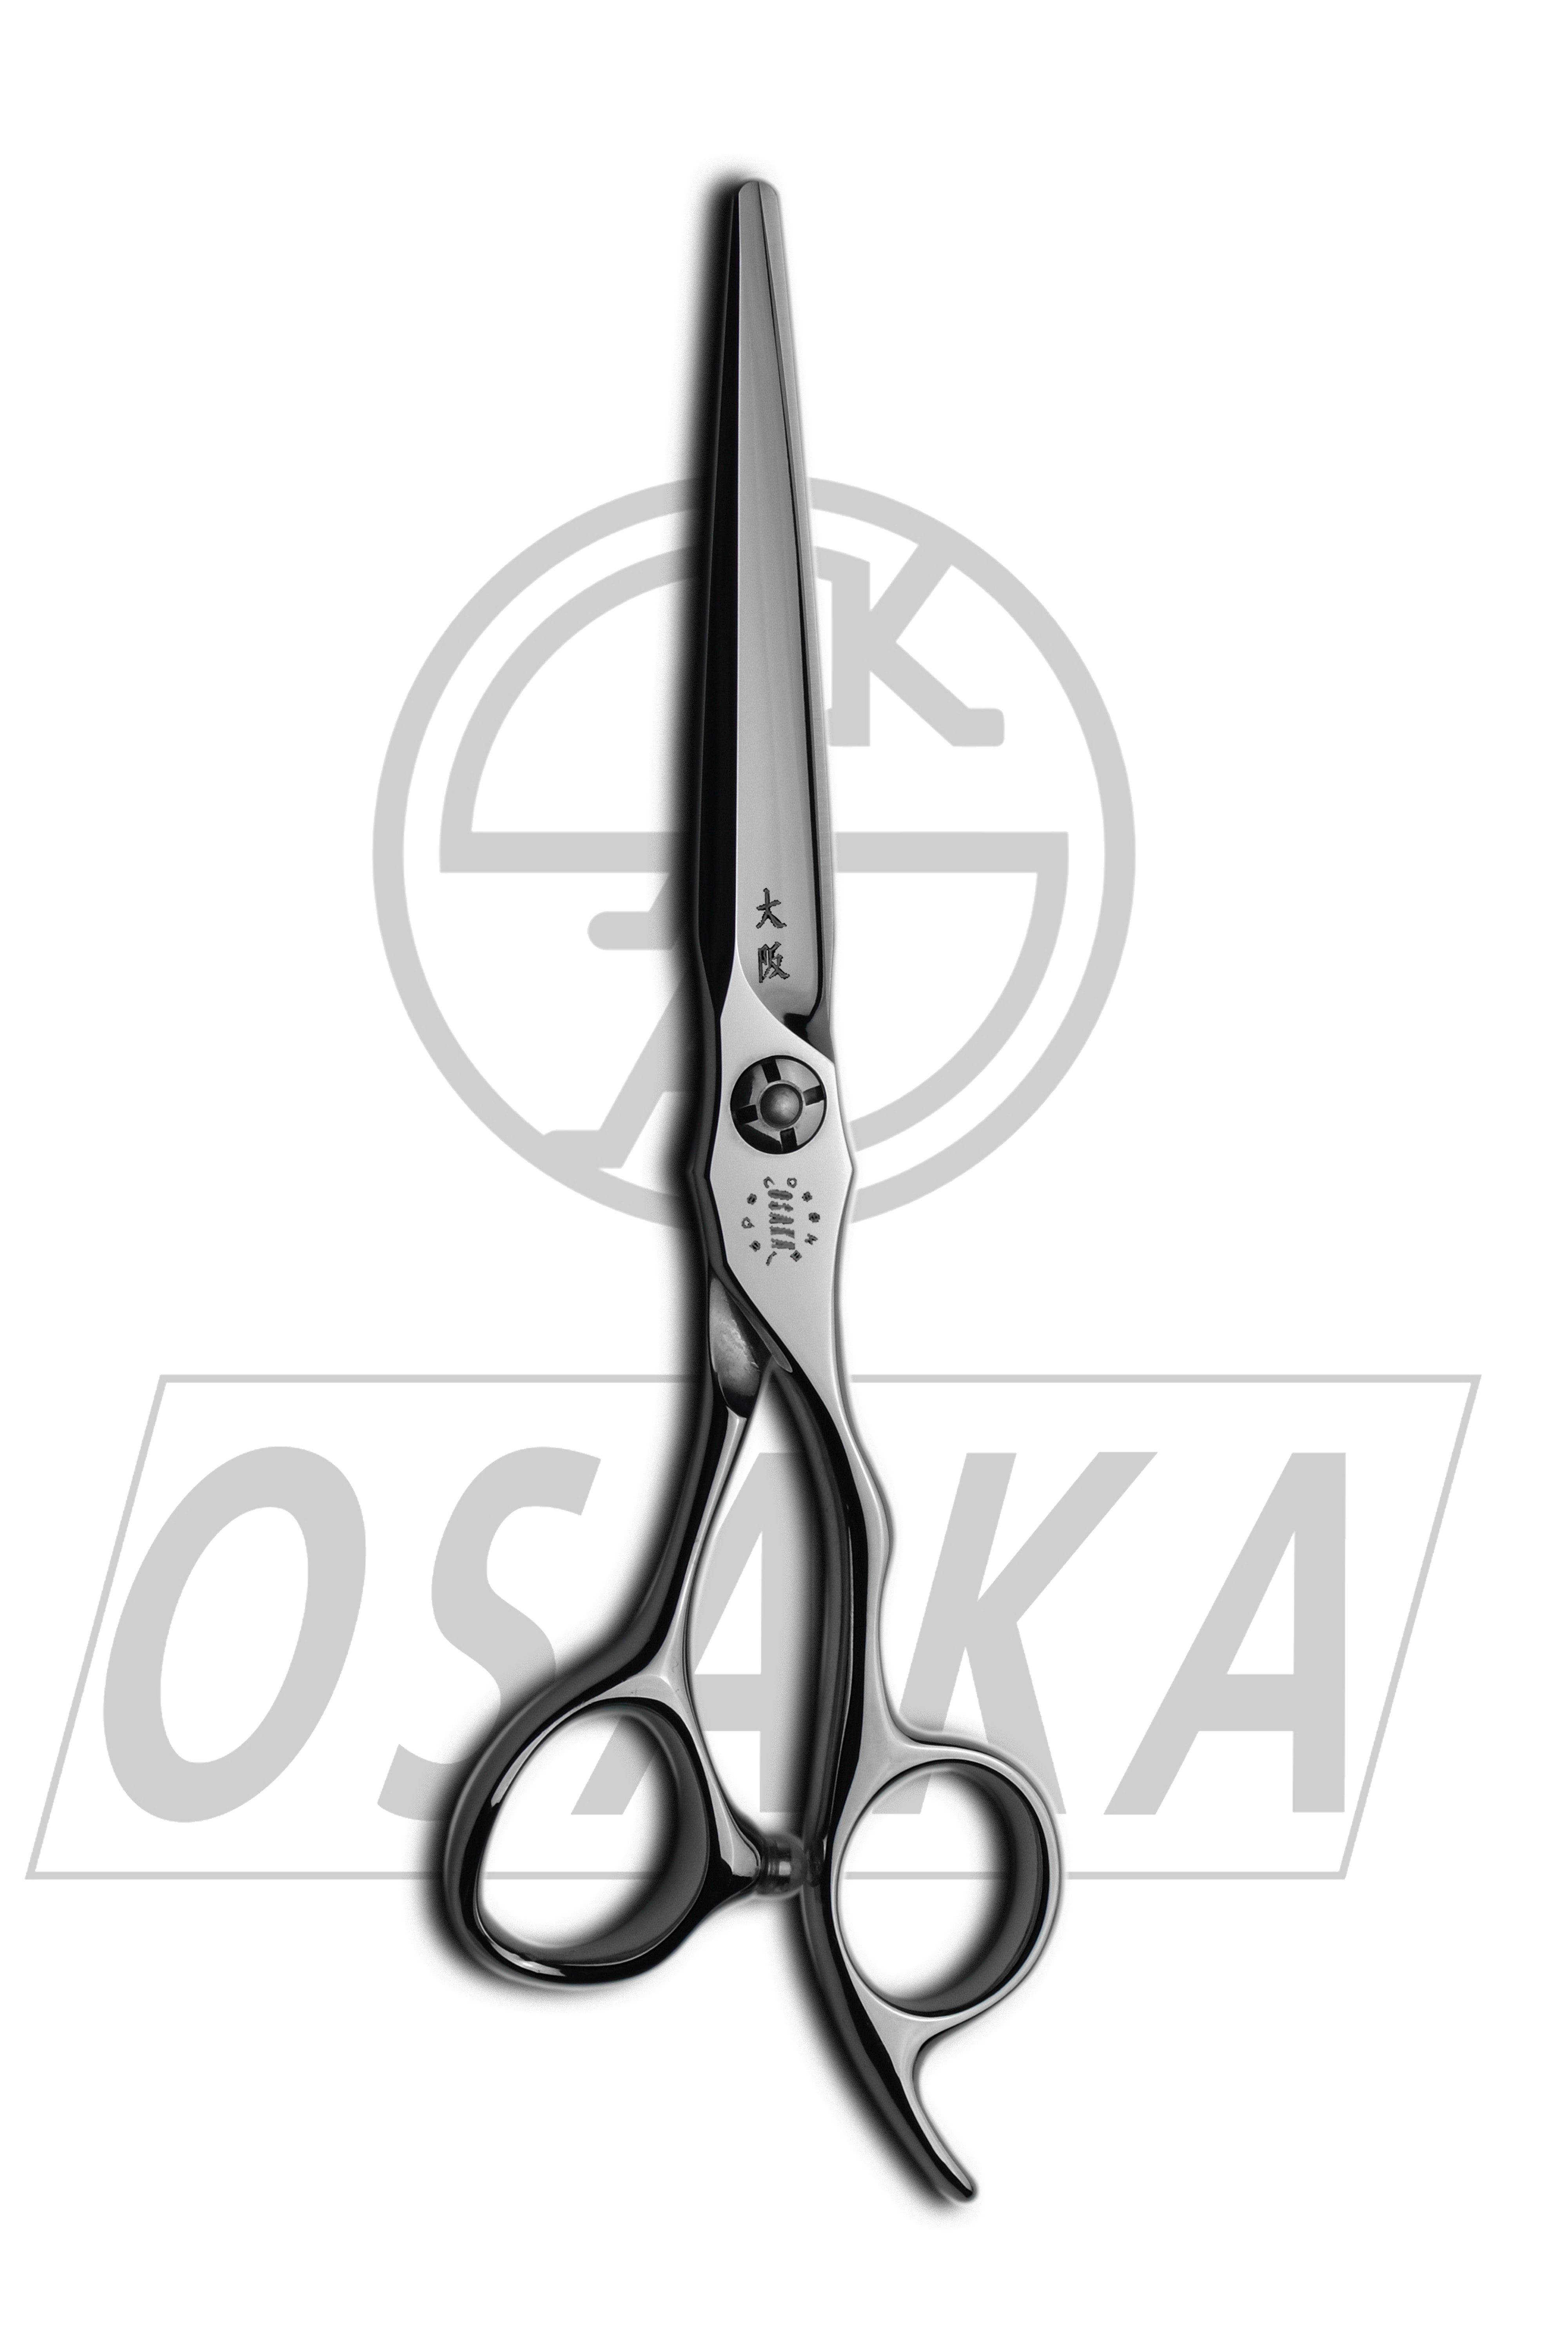 Ciseaux de coiffure japonais OSAKA MT, effilage, coupe, acier cobalt VG-10, peigne ciseaux, coiffeur homme, ciseaux ergonomiques de la marque OSAKA